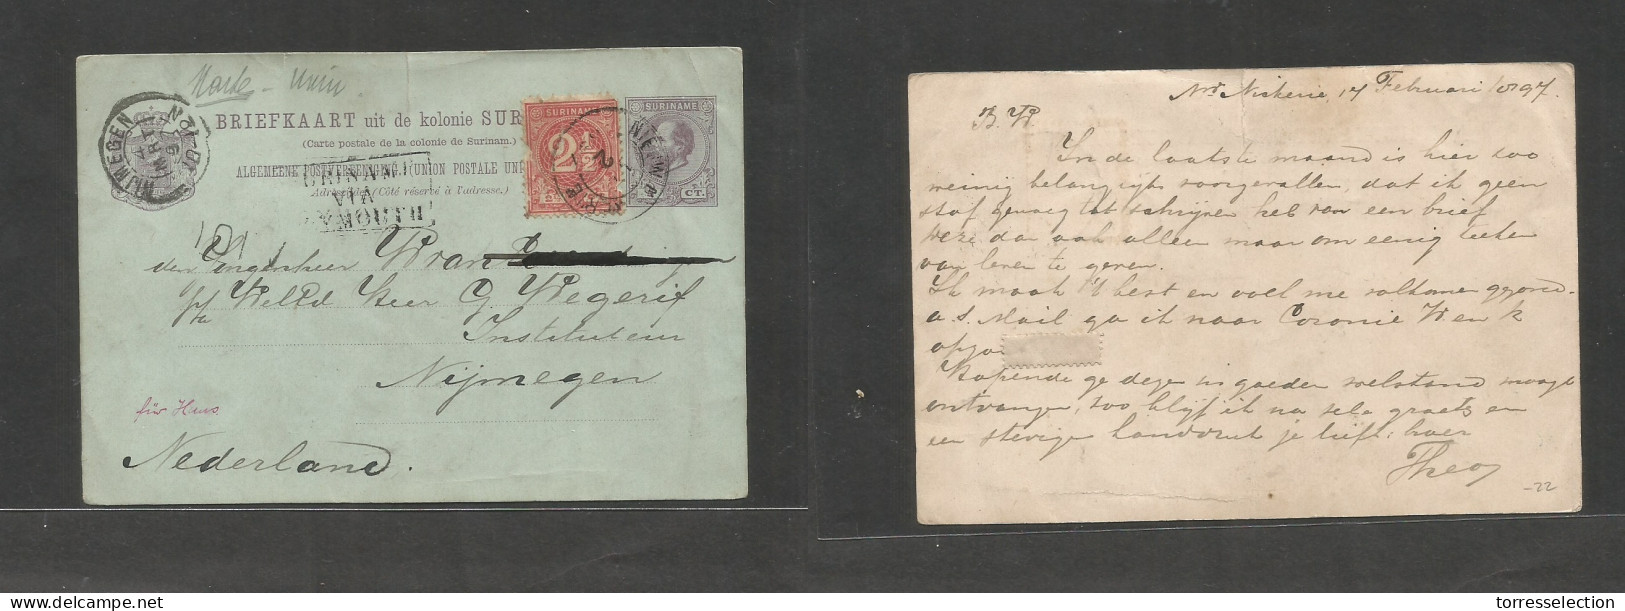 SURINAME. 1897 (17 Febr) Newe Nickenie - Netherlands, Nigmegen (4 March) Lilac Stat Card + 2 1/2c Red Adtl, Tied Cds + " - Surinam